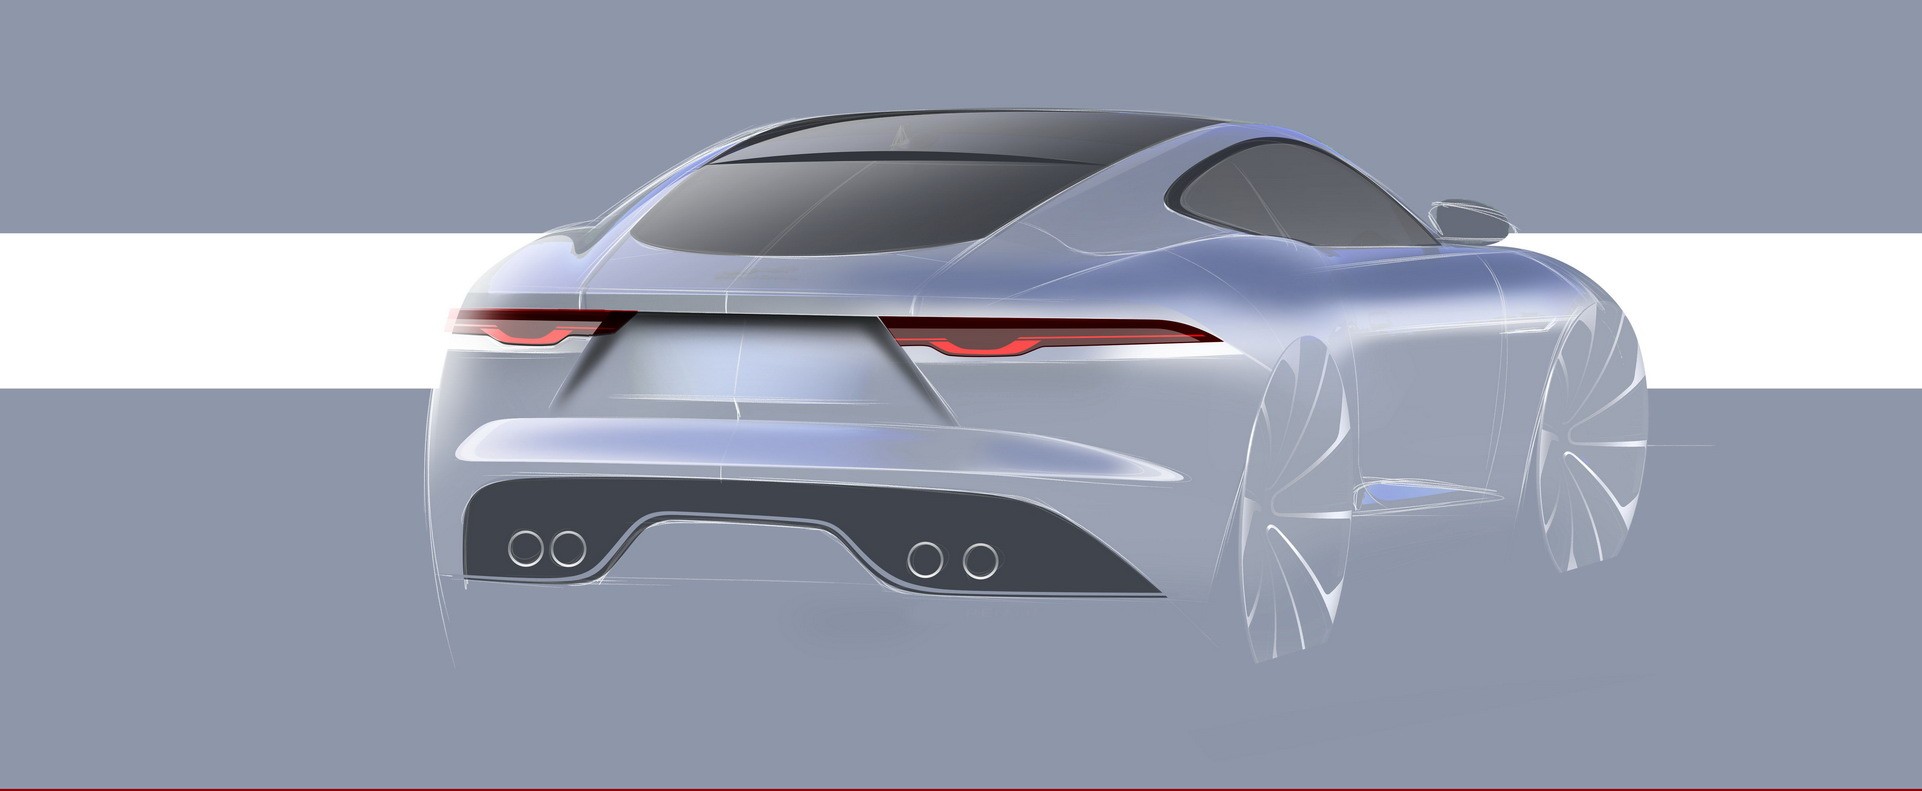 2021 Jaguar F Type Review Autoevolution